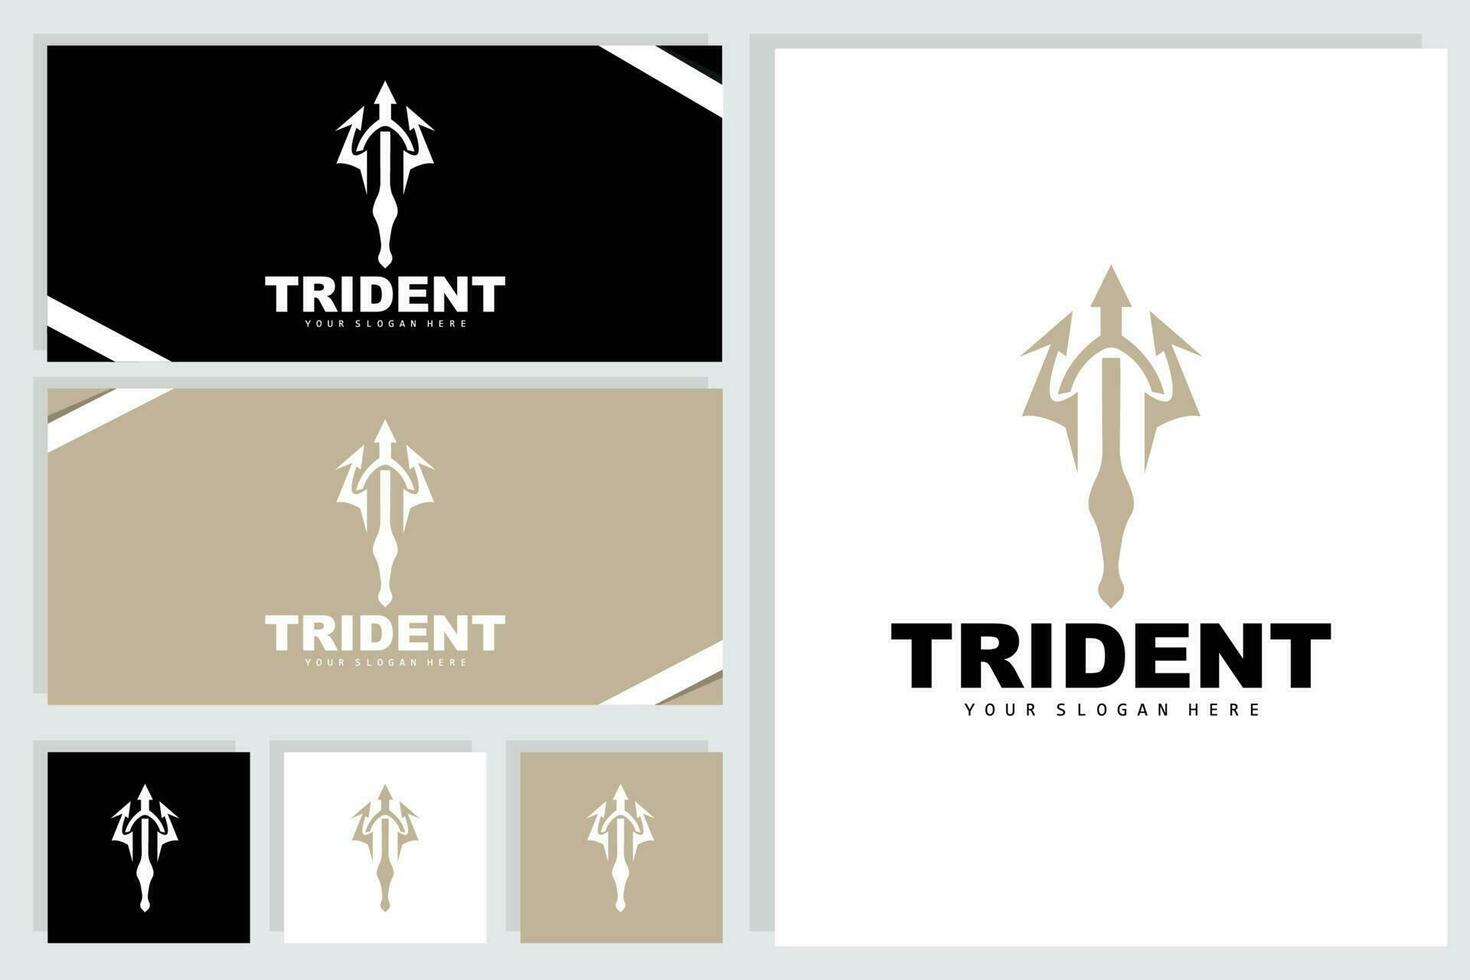 drietand logo, vector magie speer van Poseidon Neptunus, triton koning ontwerp, sjabloon icoon merk illustratie